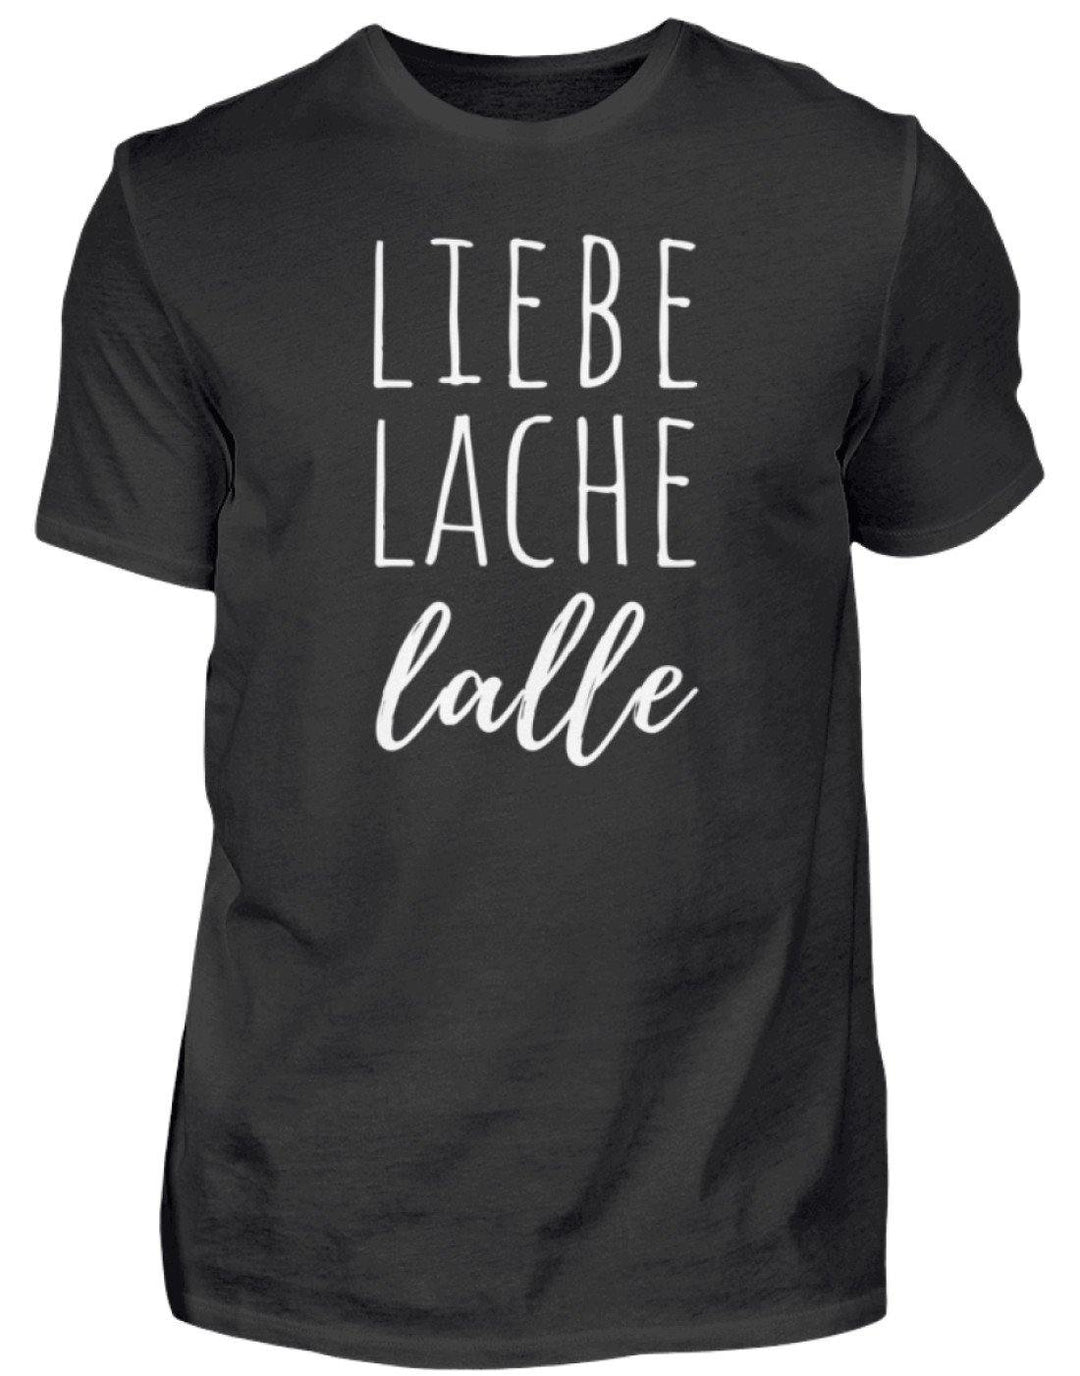 Liebe Lache Lalle - Words on Shirt  - Herren Shirt - Words on Shirts Sag es mit dem Mittelfinger Shirts Hoodies Sweatshirt Taschen Gymsack Spruch Sprüche Statement